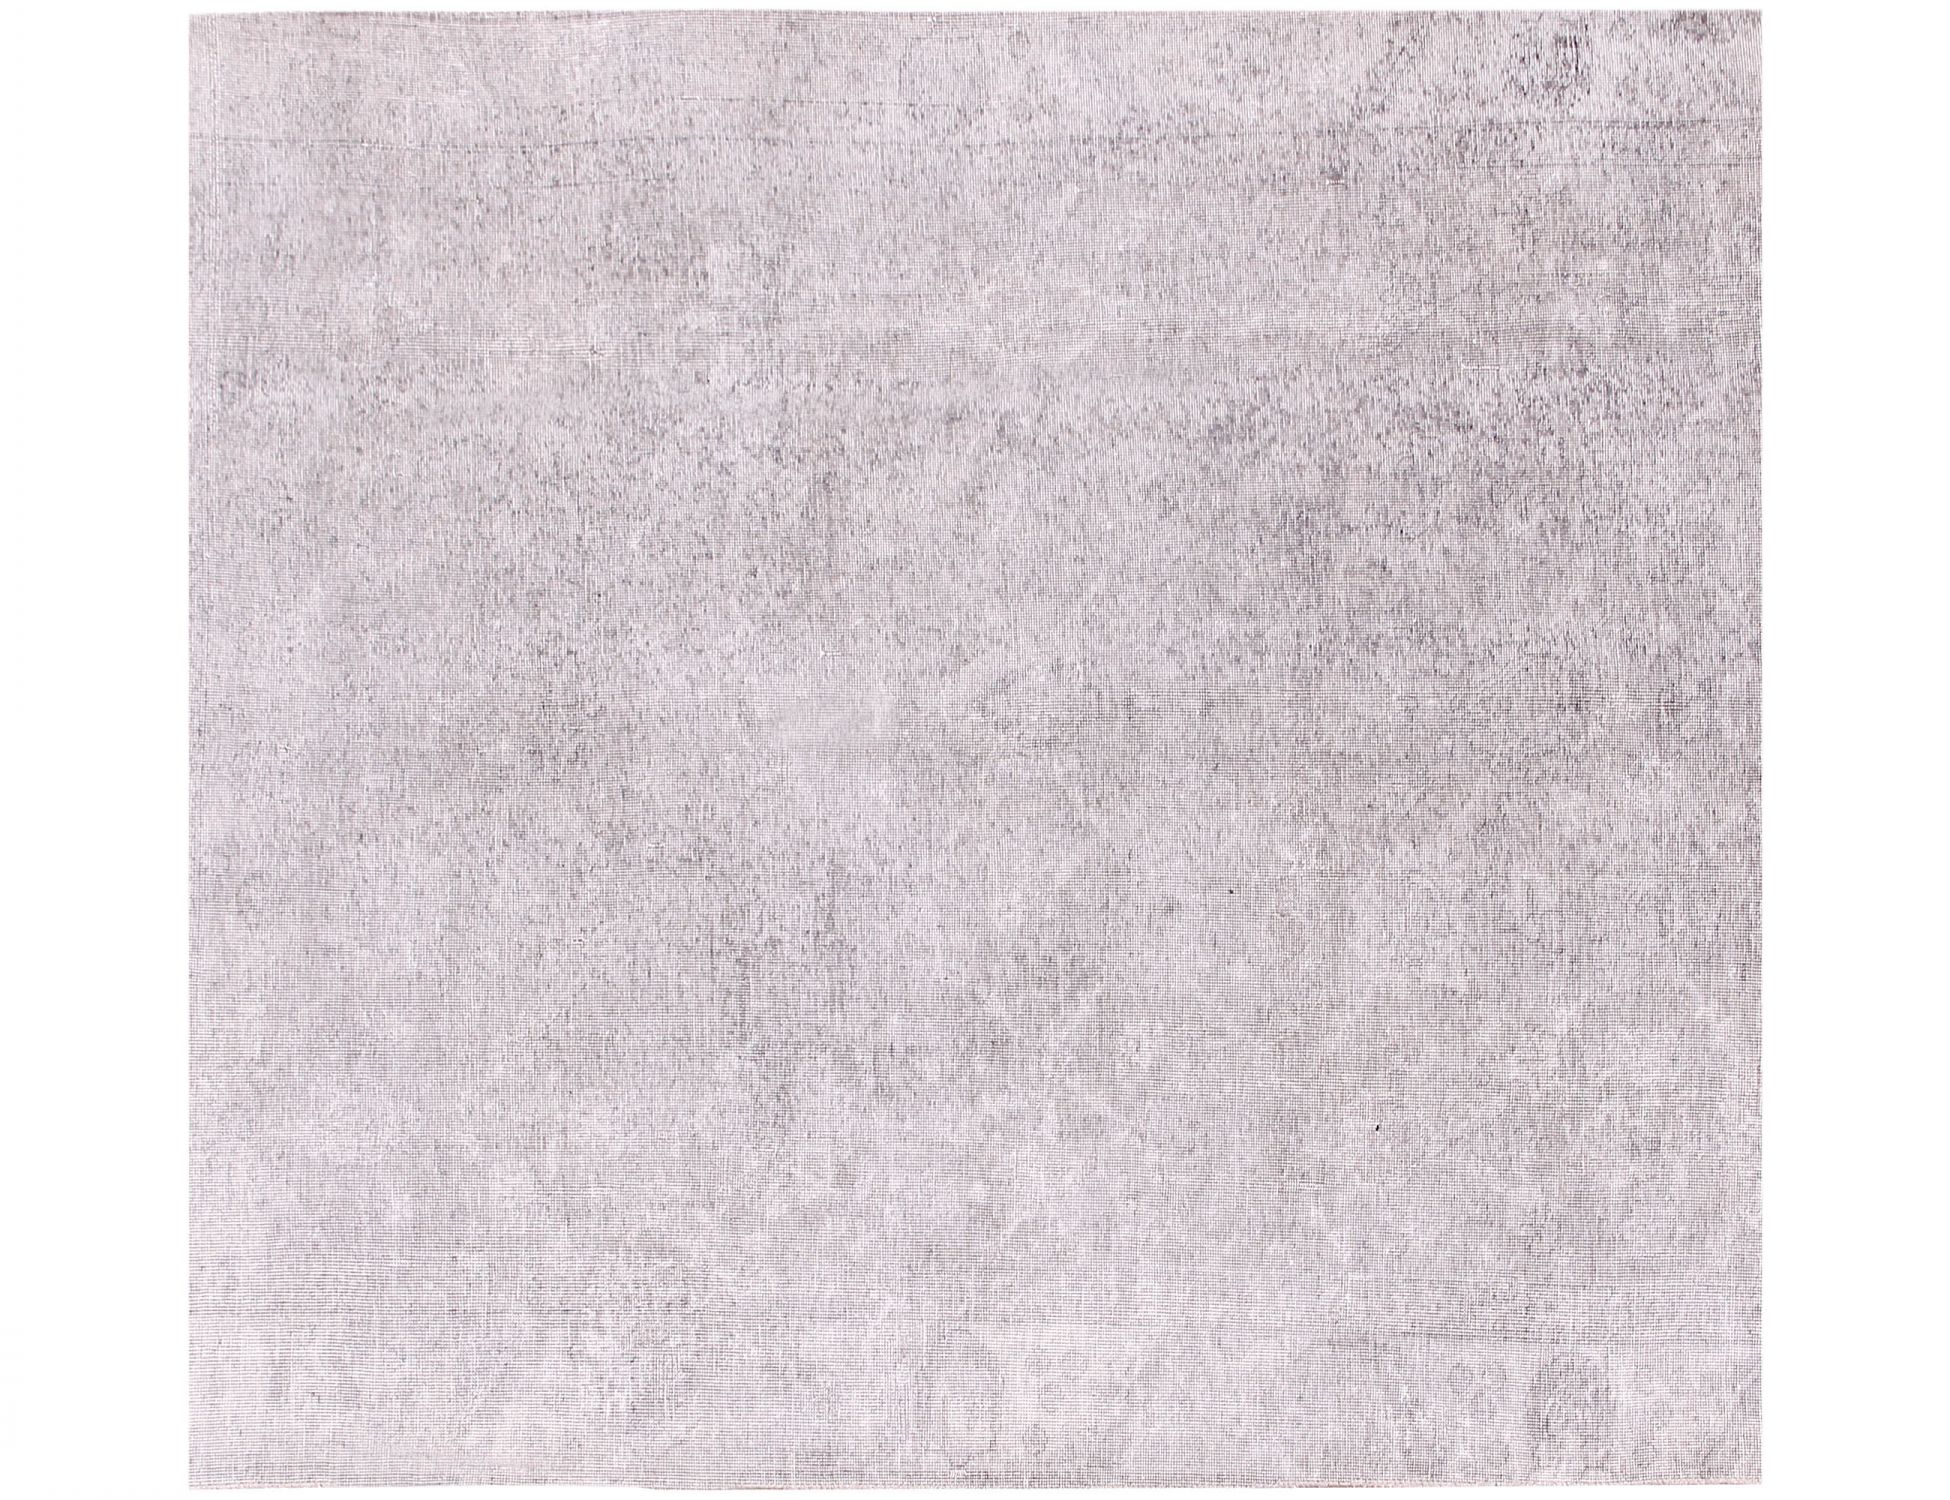 Quadrat  Vintage Teppich  grau <br/>182 x 182 cm